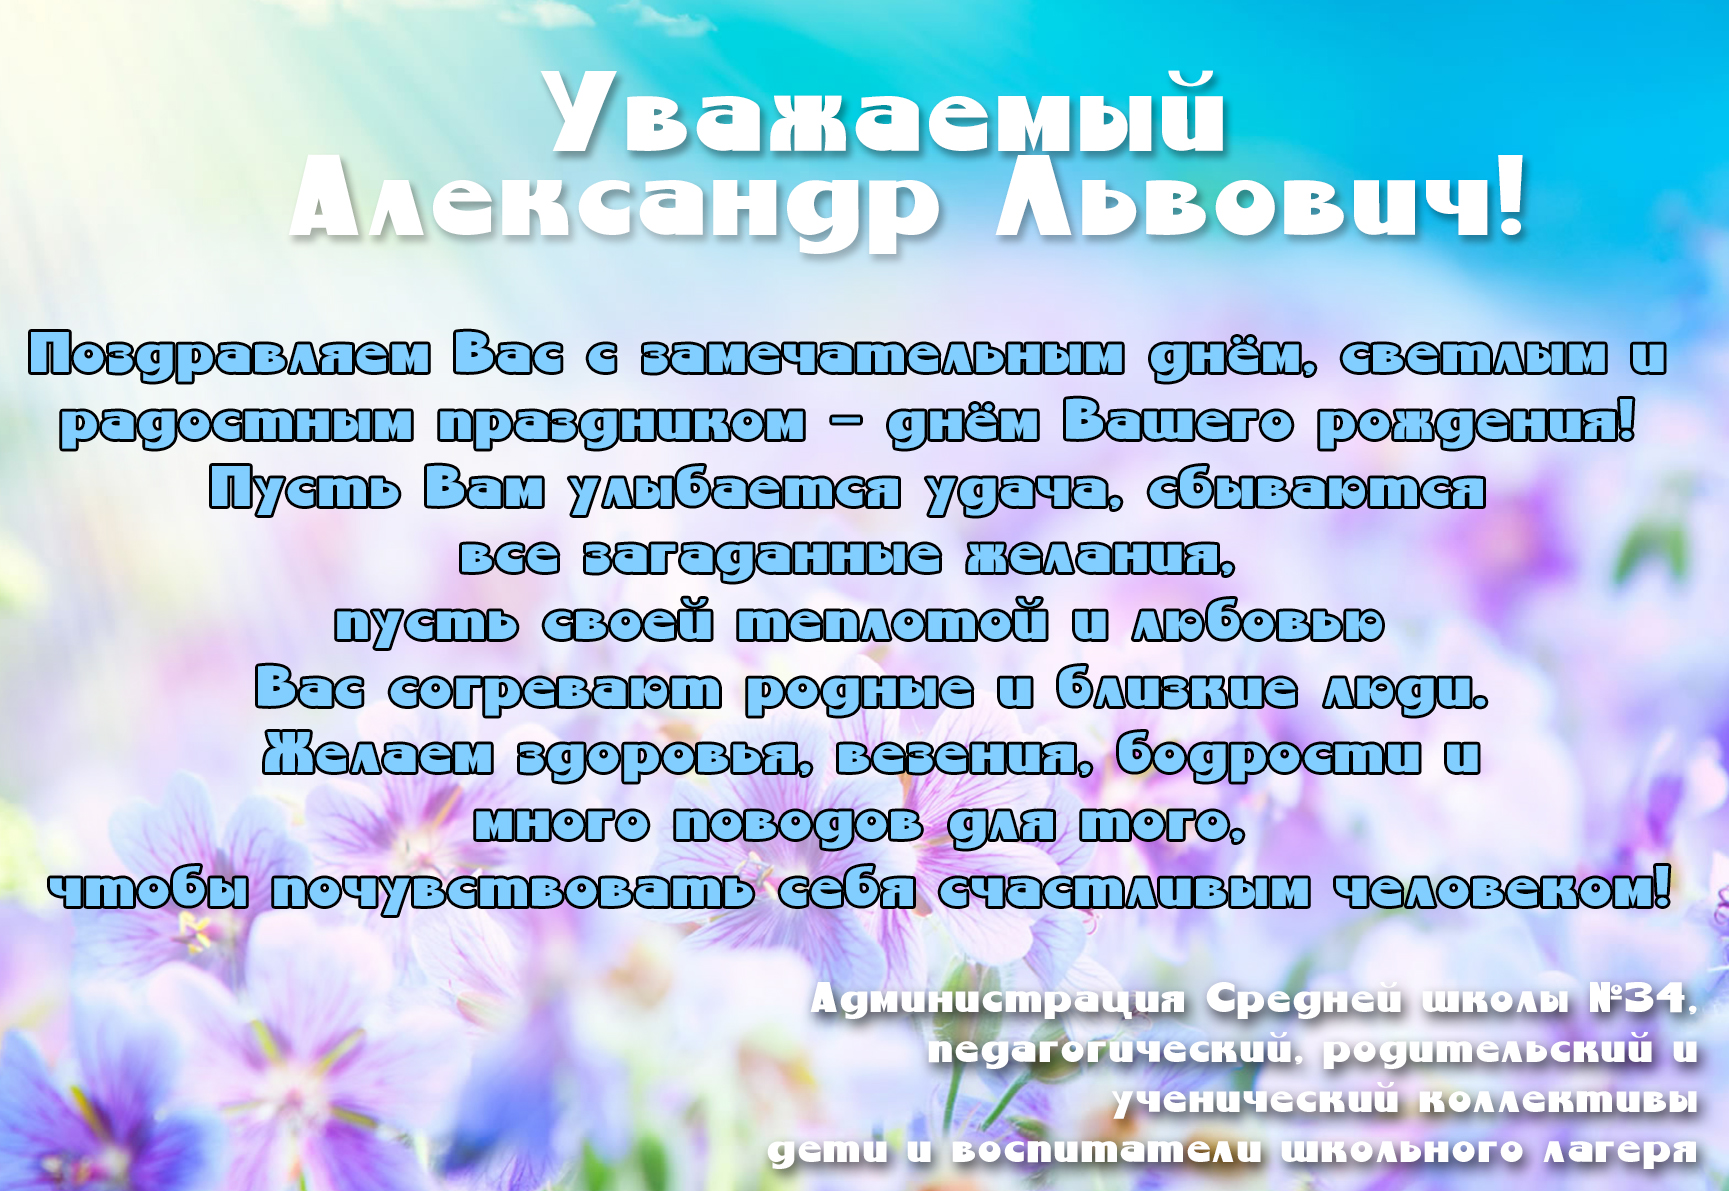 Александр Леонидович поздравляем вас с днём рождения